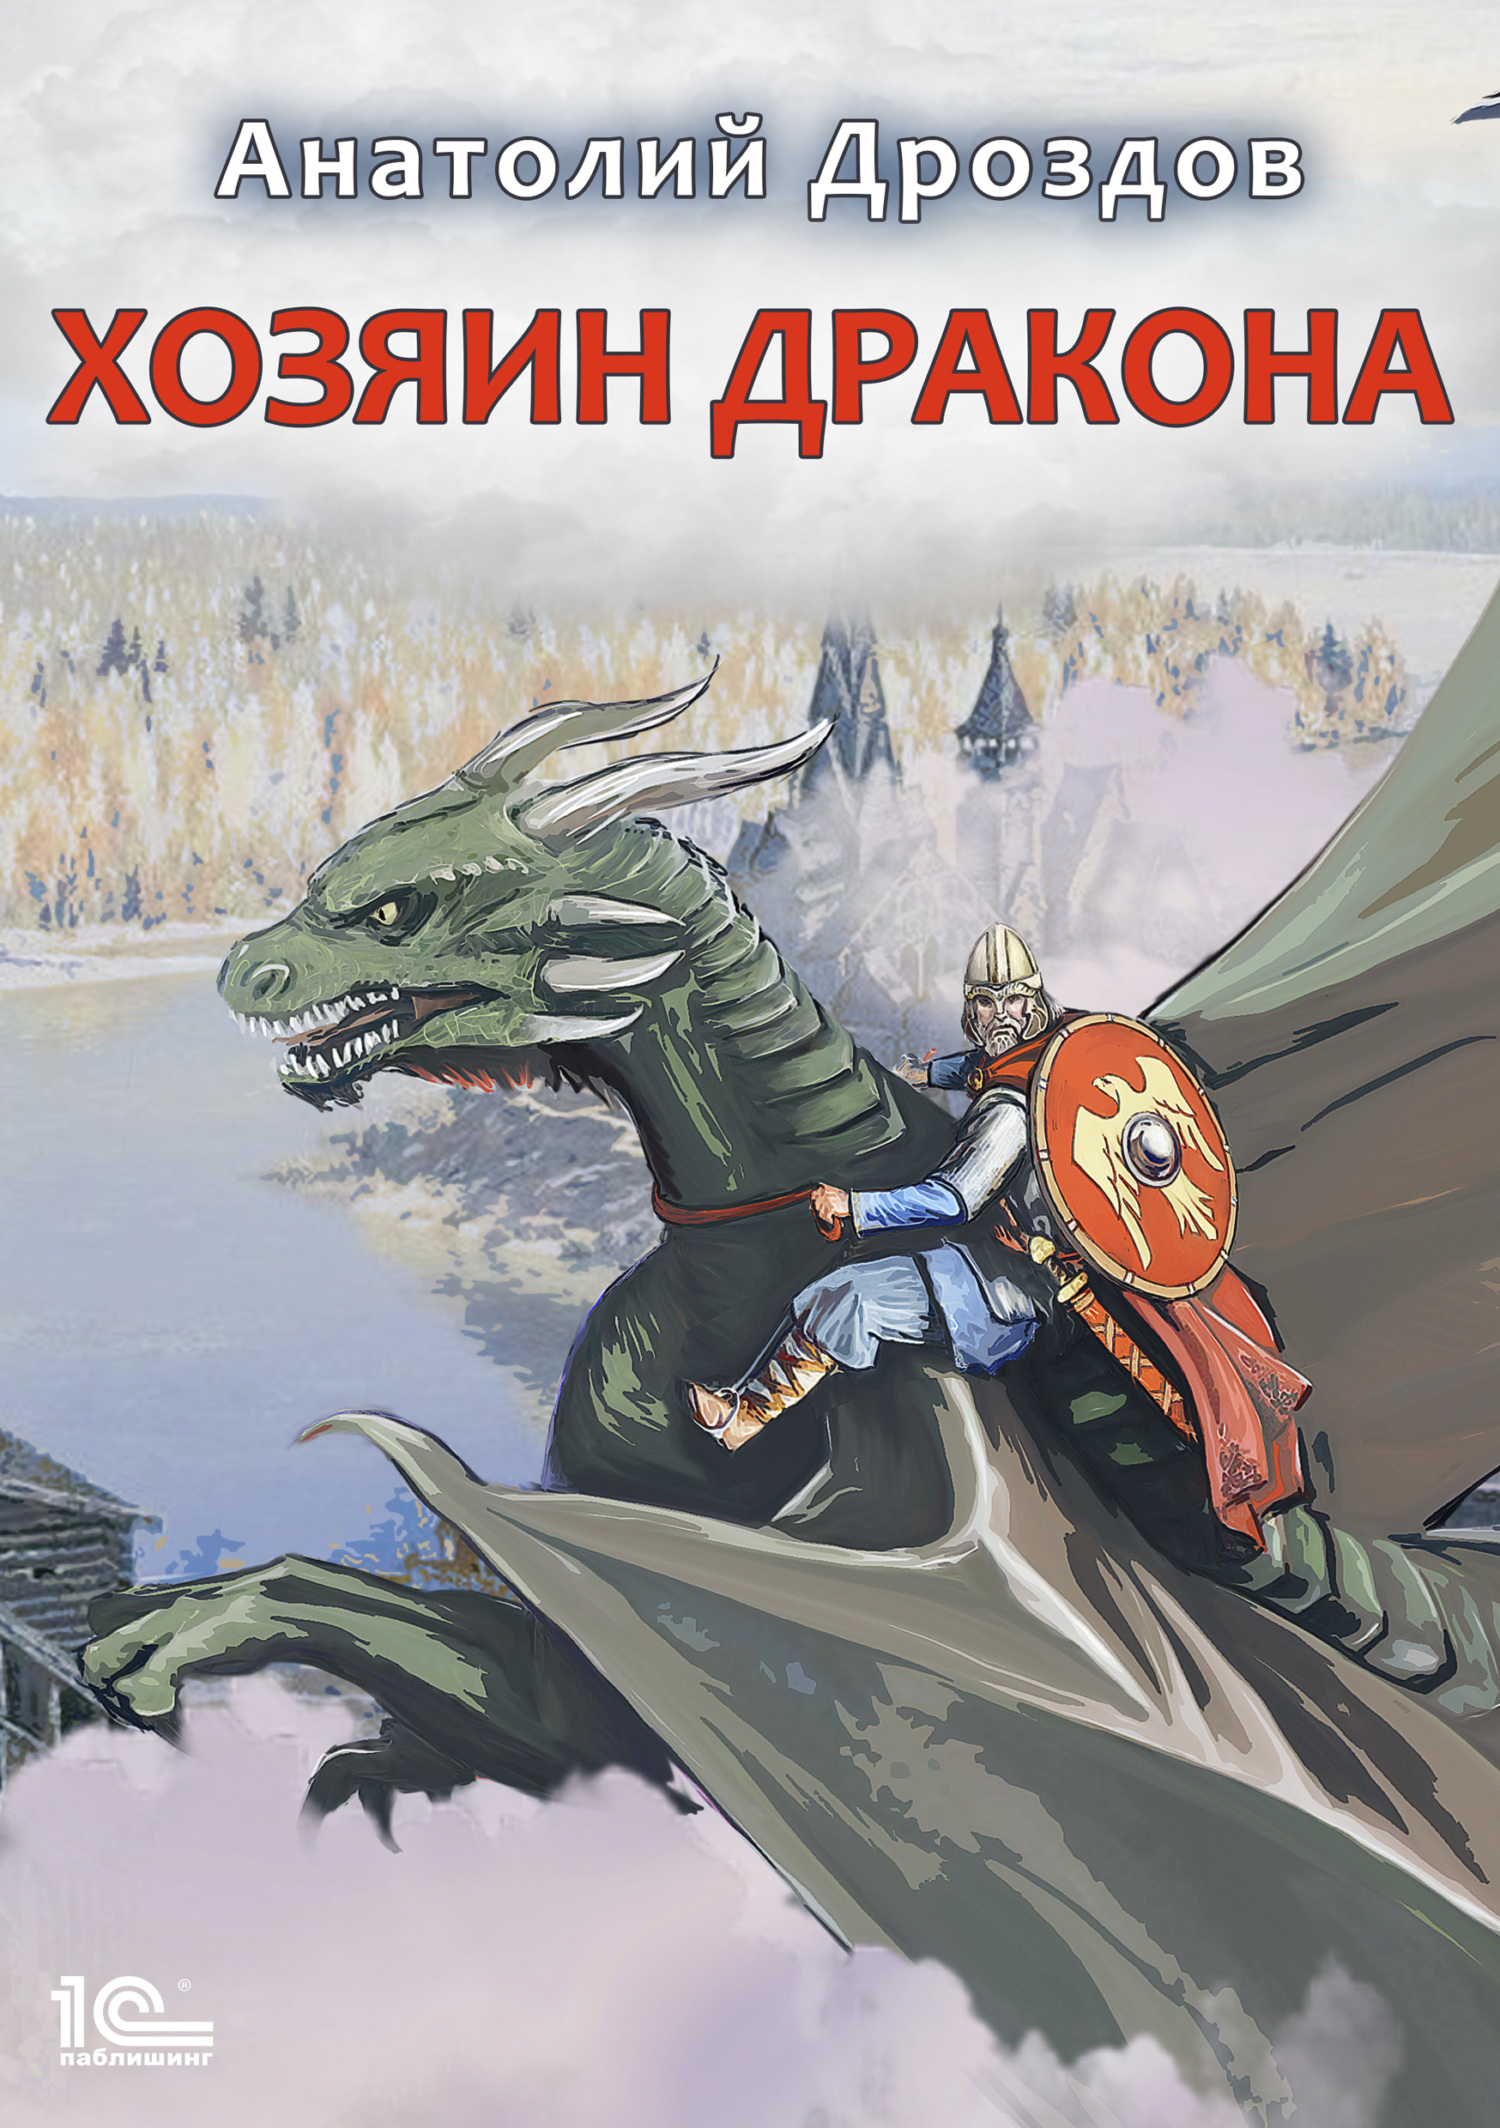 Анатолий Дроздов. Хозяин дракона. Книга 1